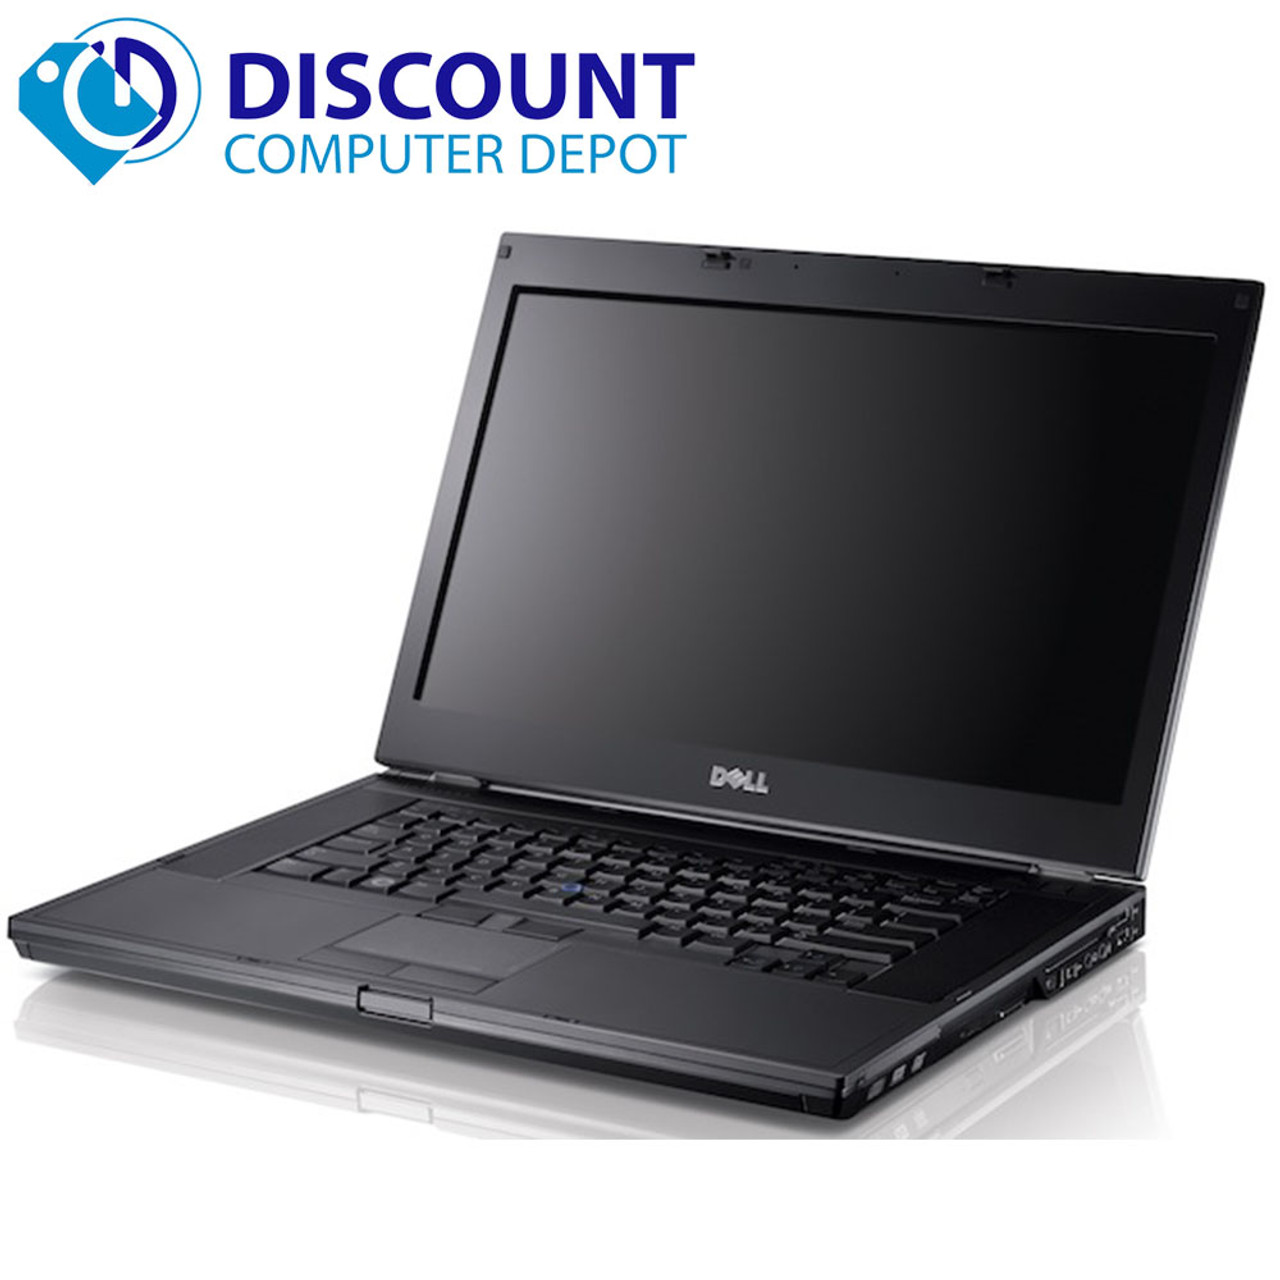 Dell Latitude E6510 Laptop PC Intel i5 2.4GHz 4GB 320GB Hard Drive DVDRW  Windows 10 Pro and WIFI